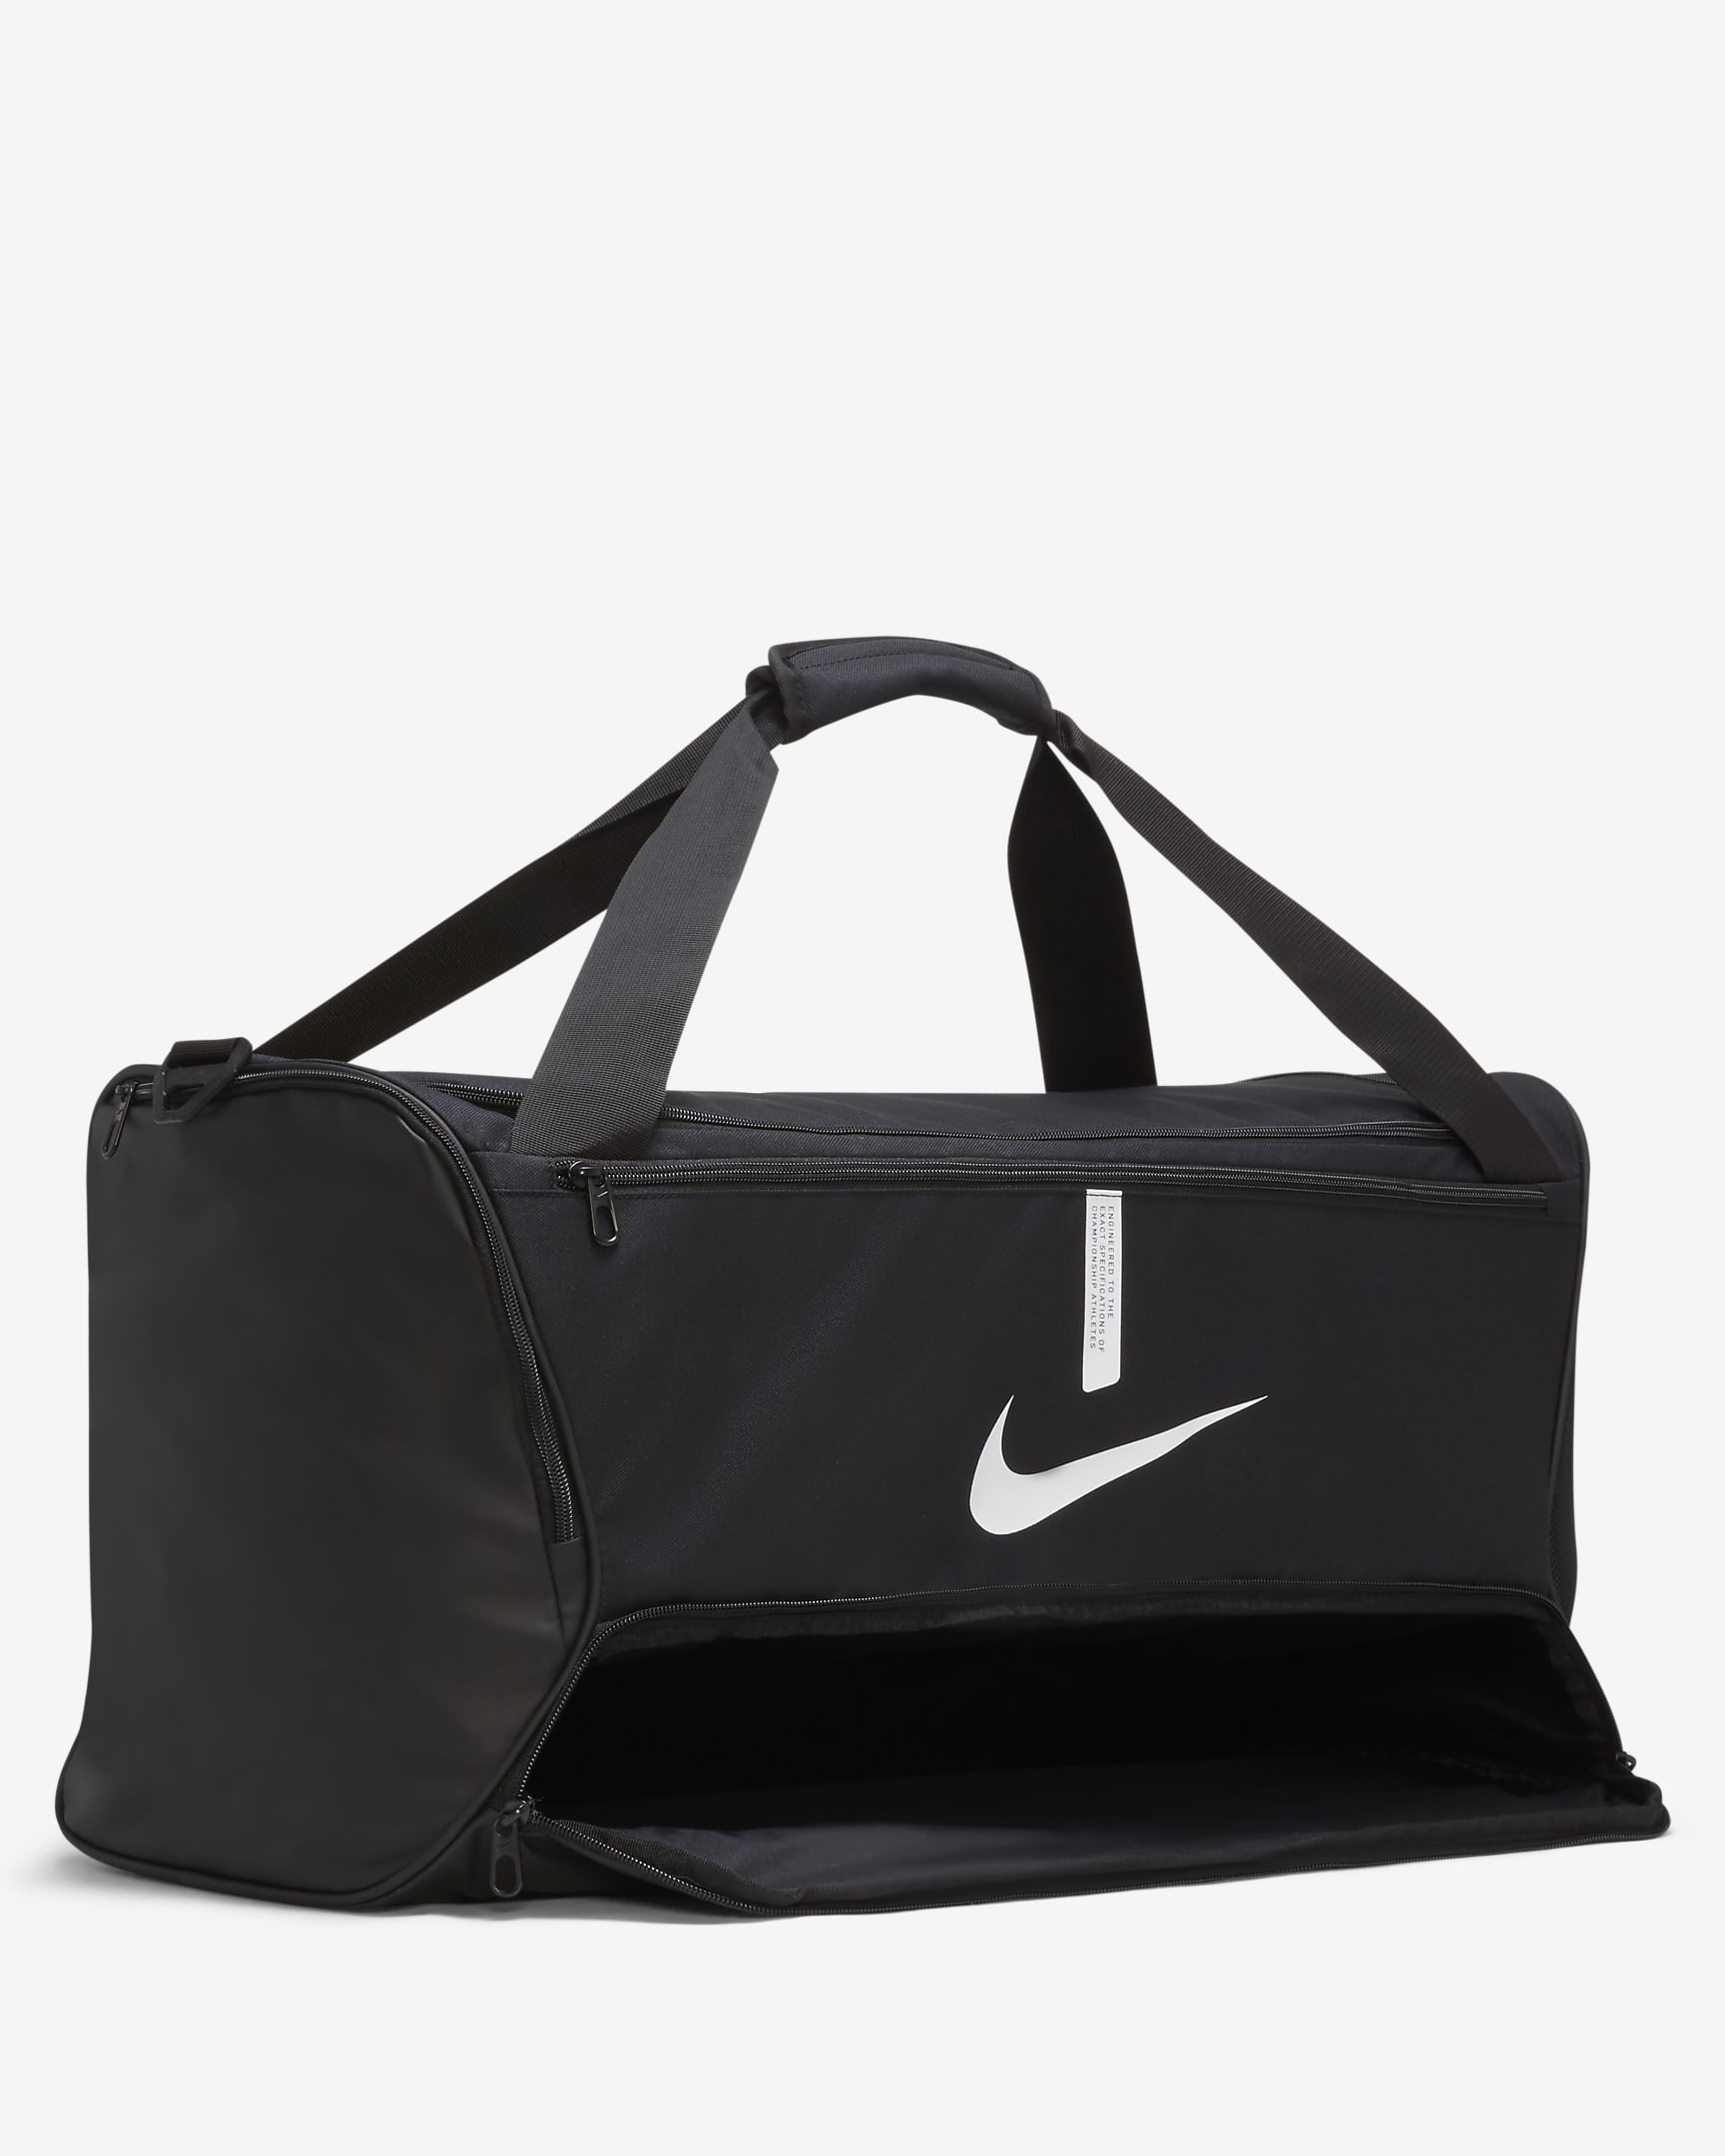 Nike Academy Team Football Duffel Bag (Medium, 60L). Nike CH